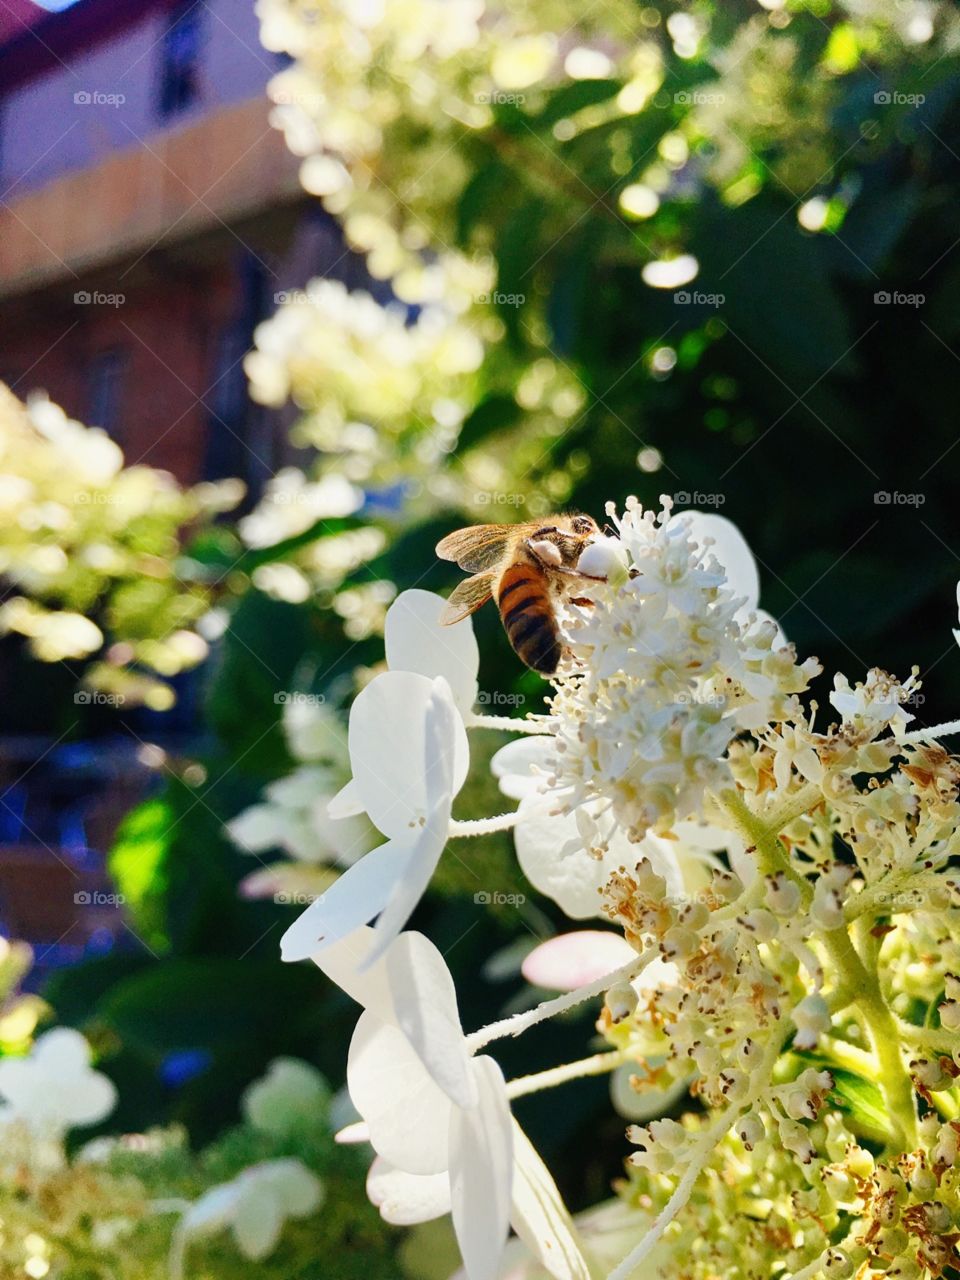 Bee on white hydrangea plant